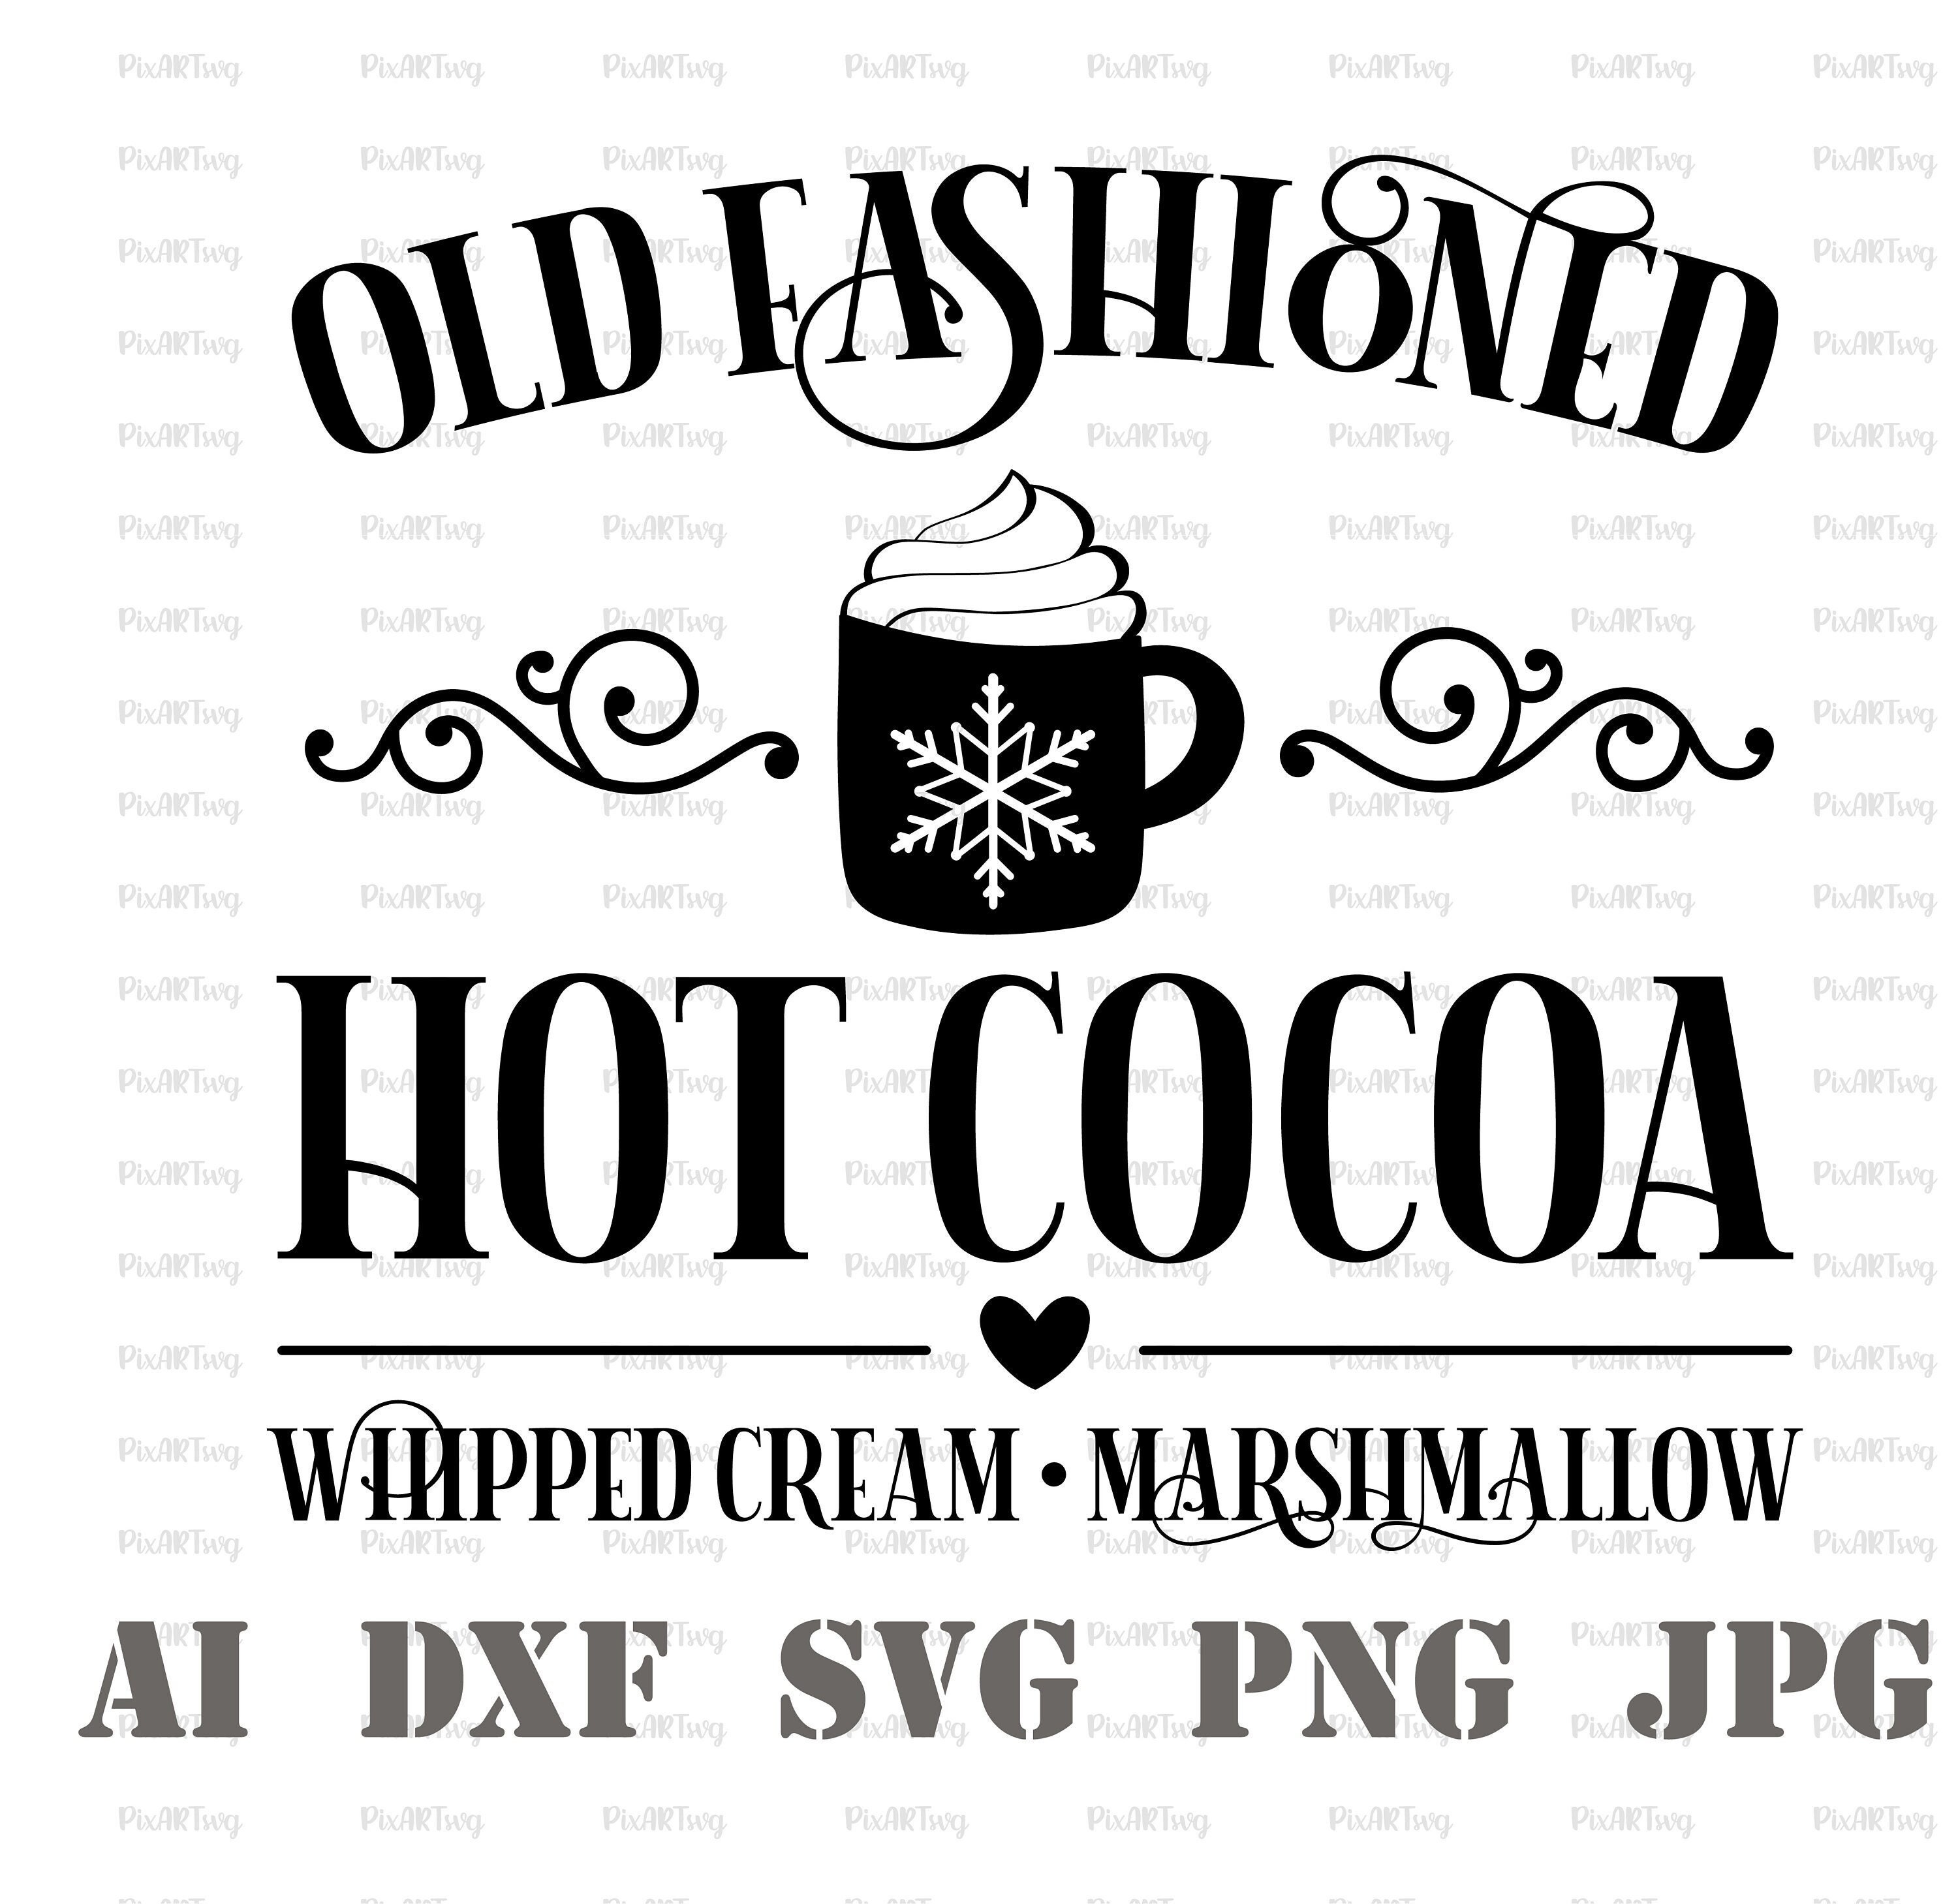 12 Glitter Snowflake Winter Wonderland Wooden Coffee Stirrers Hot Chocolate  Bar Stirrers Winter Onederland Party 